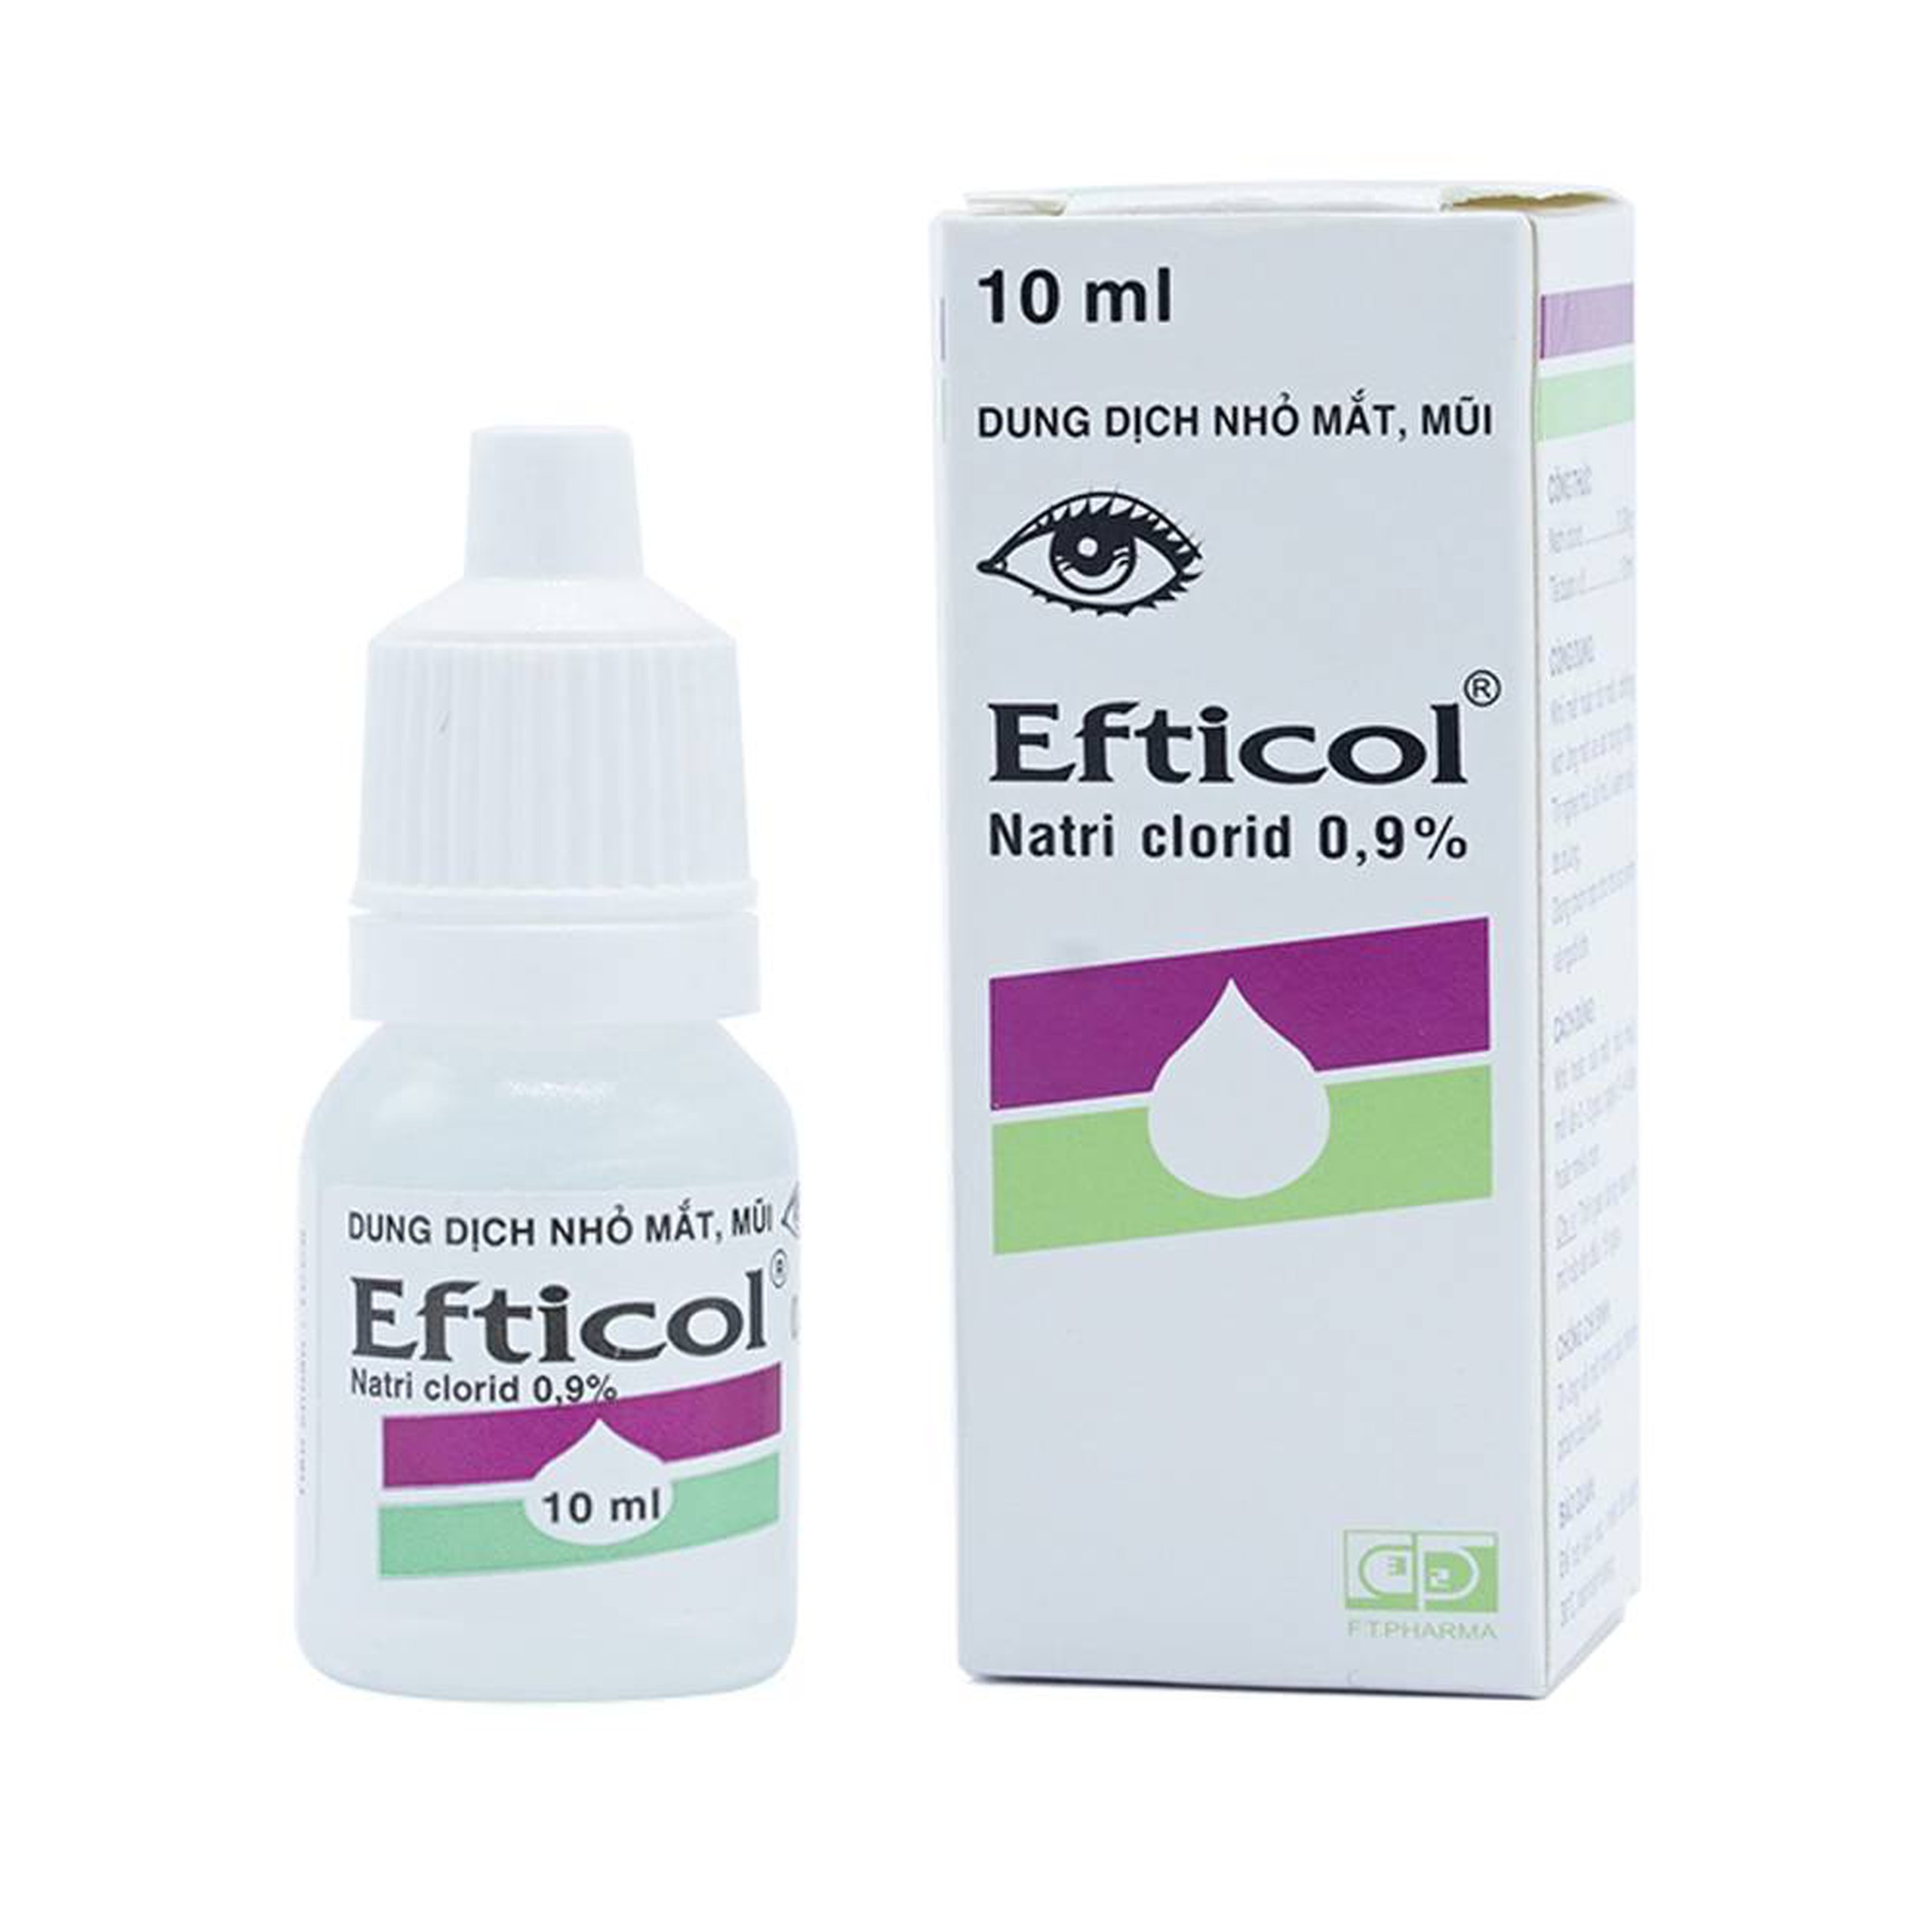 Thuốc Efticol Natri Clorid 0.9% Dược 3-2 dùng trong trường hợp rửa mắt, mũi (10ml)